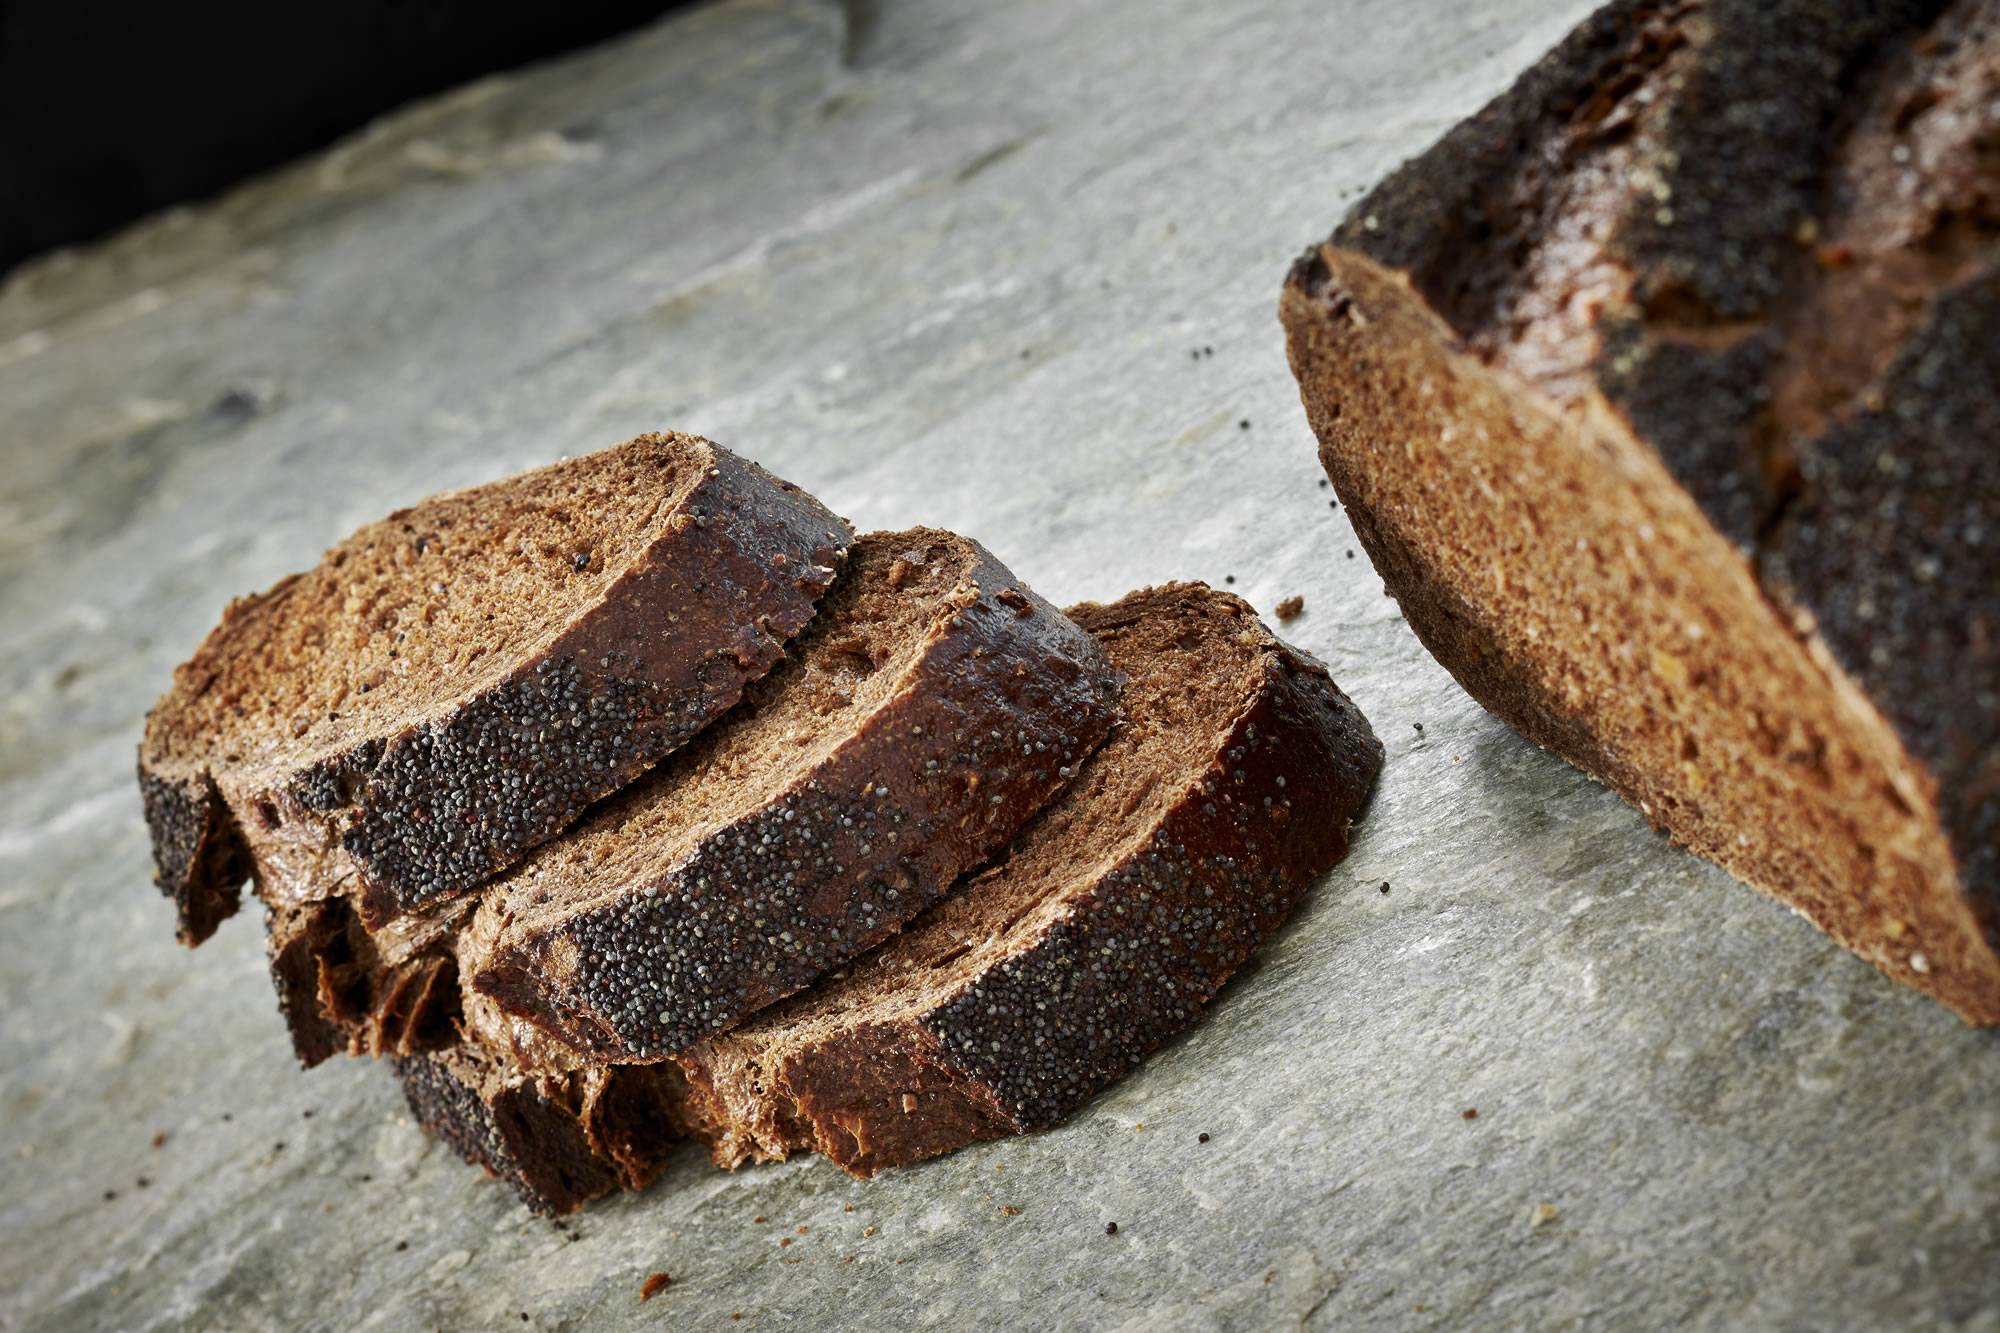 Ржаной хлеб: польза и вред